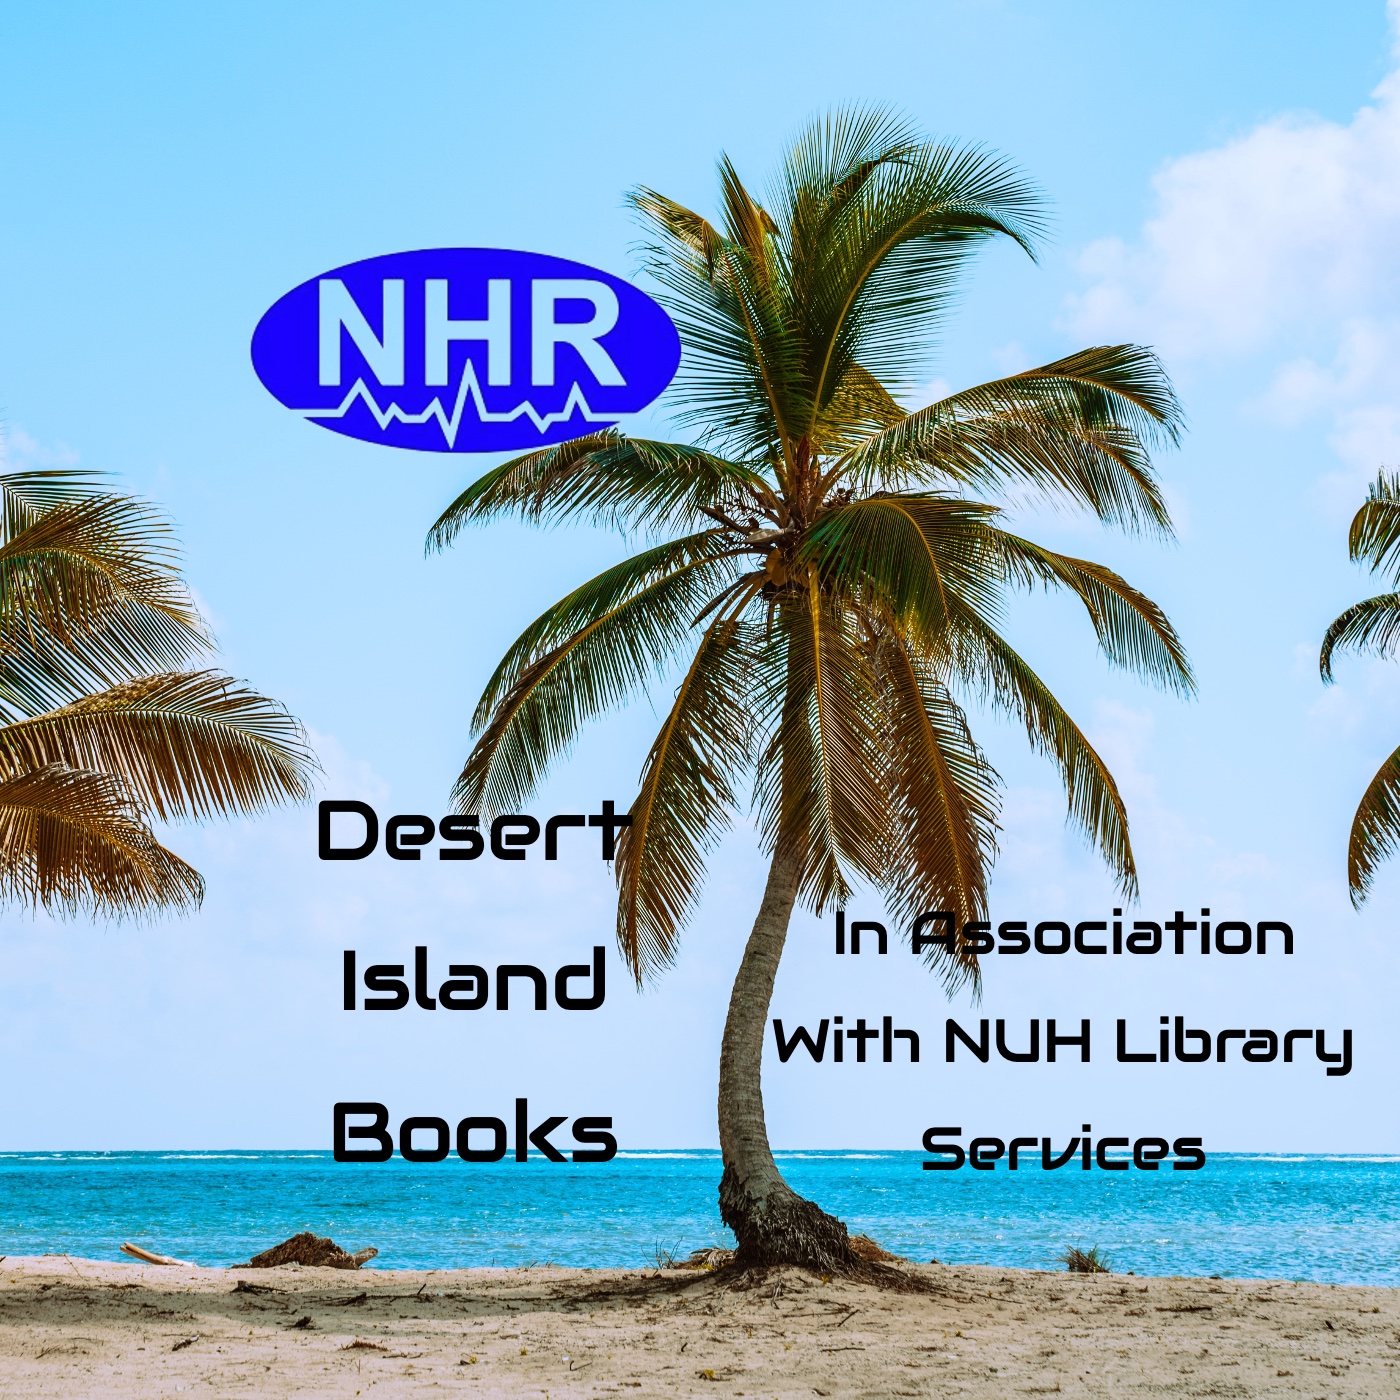 Artwork for podcast NHR Desert Island Books